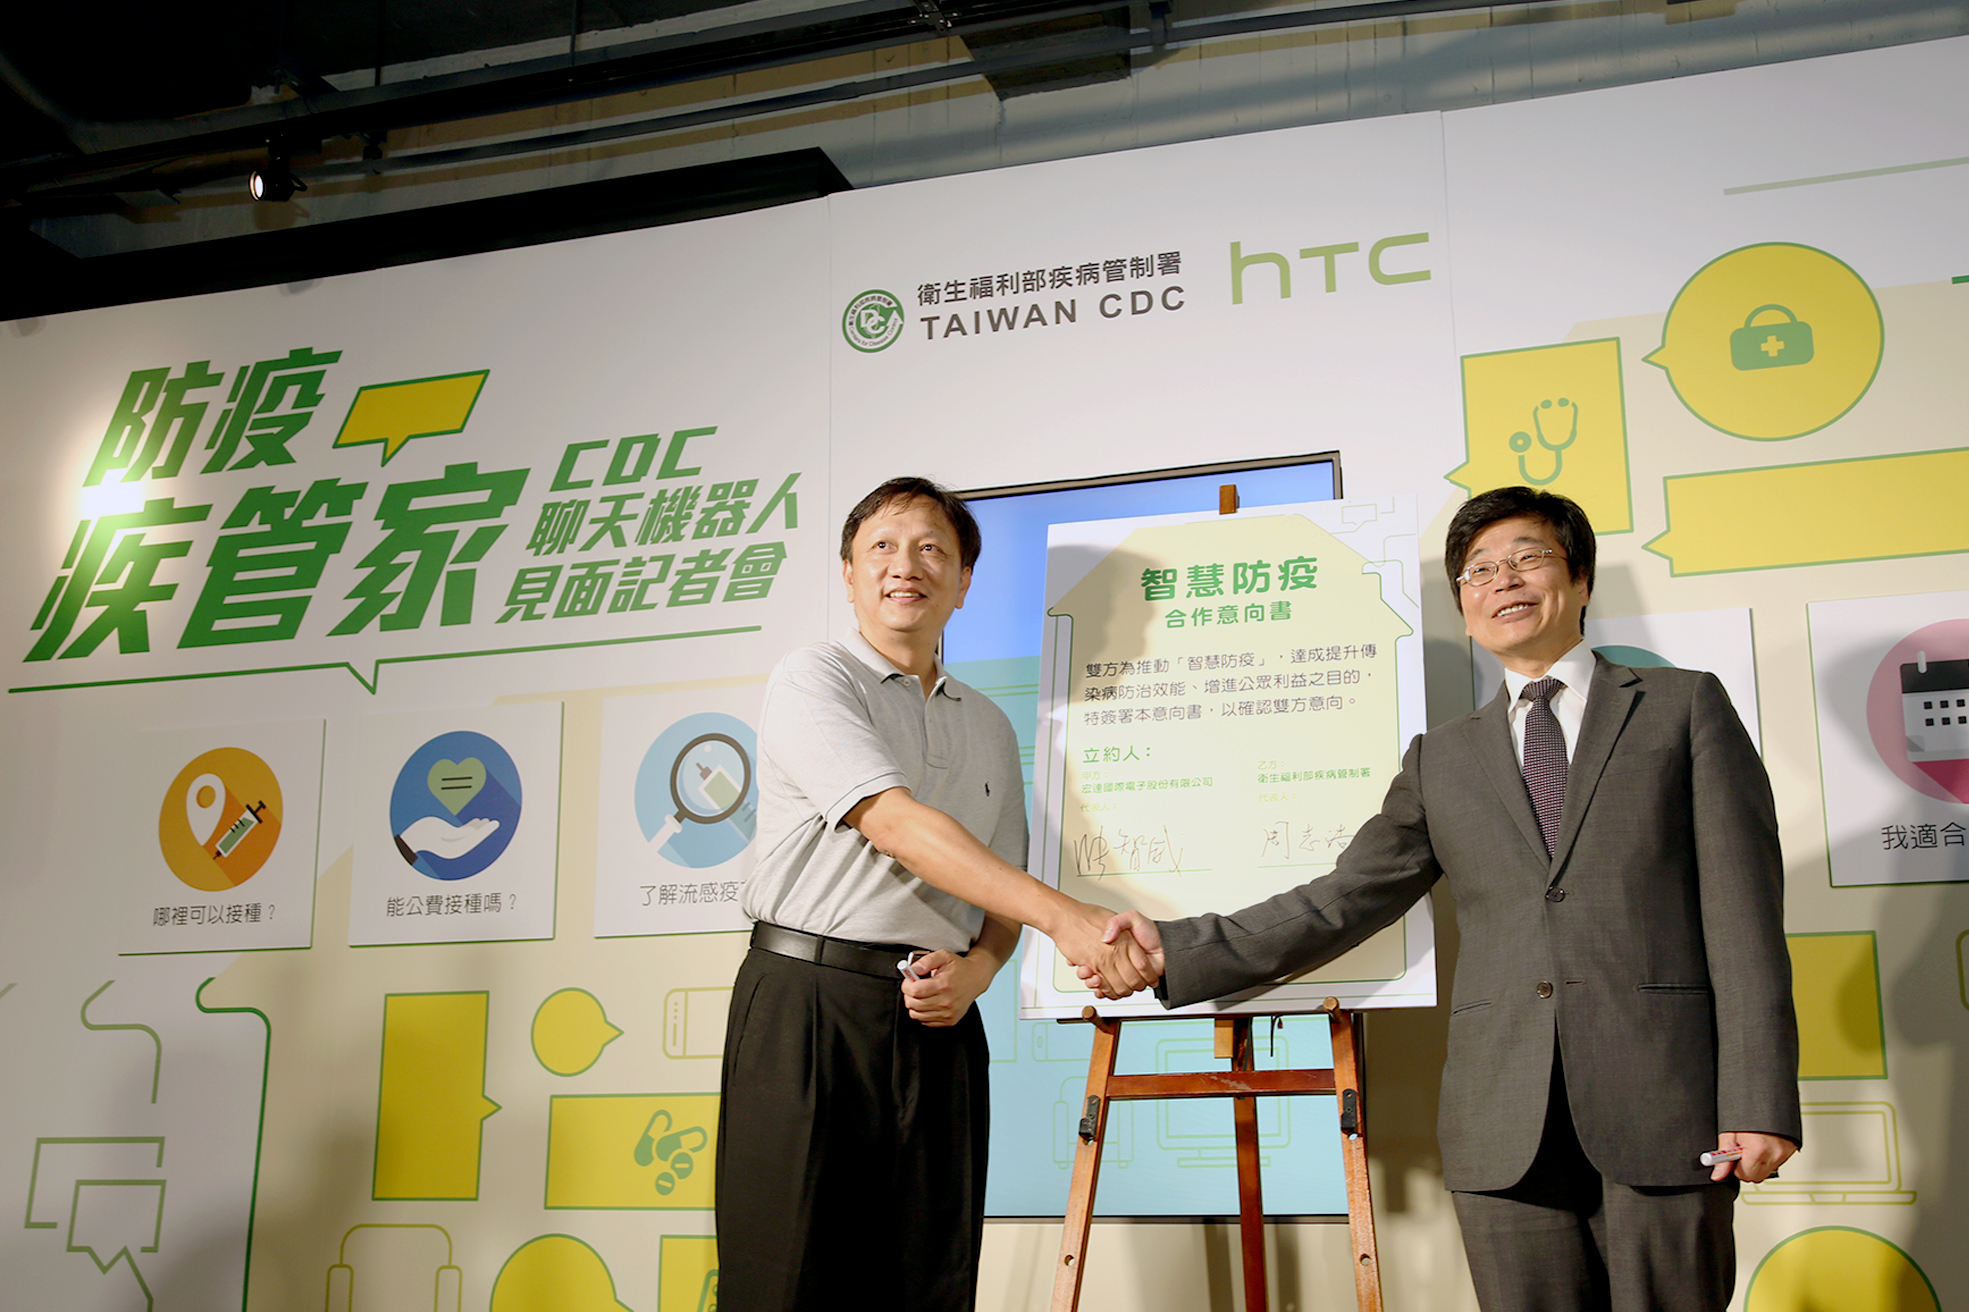 新聞儀式-疾管署與HTC簽署智慧防疫合作意向書儀式.JPG